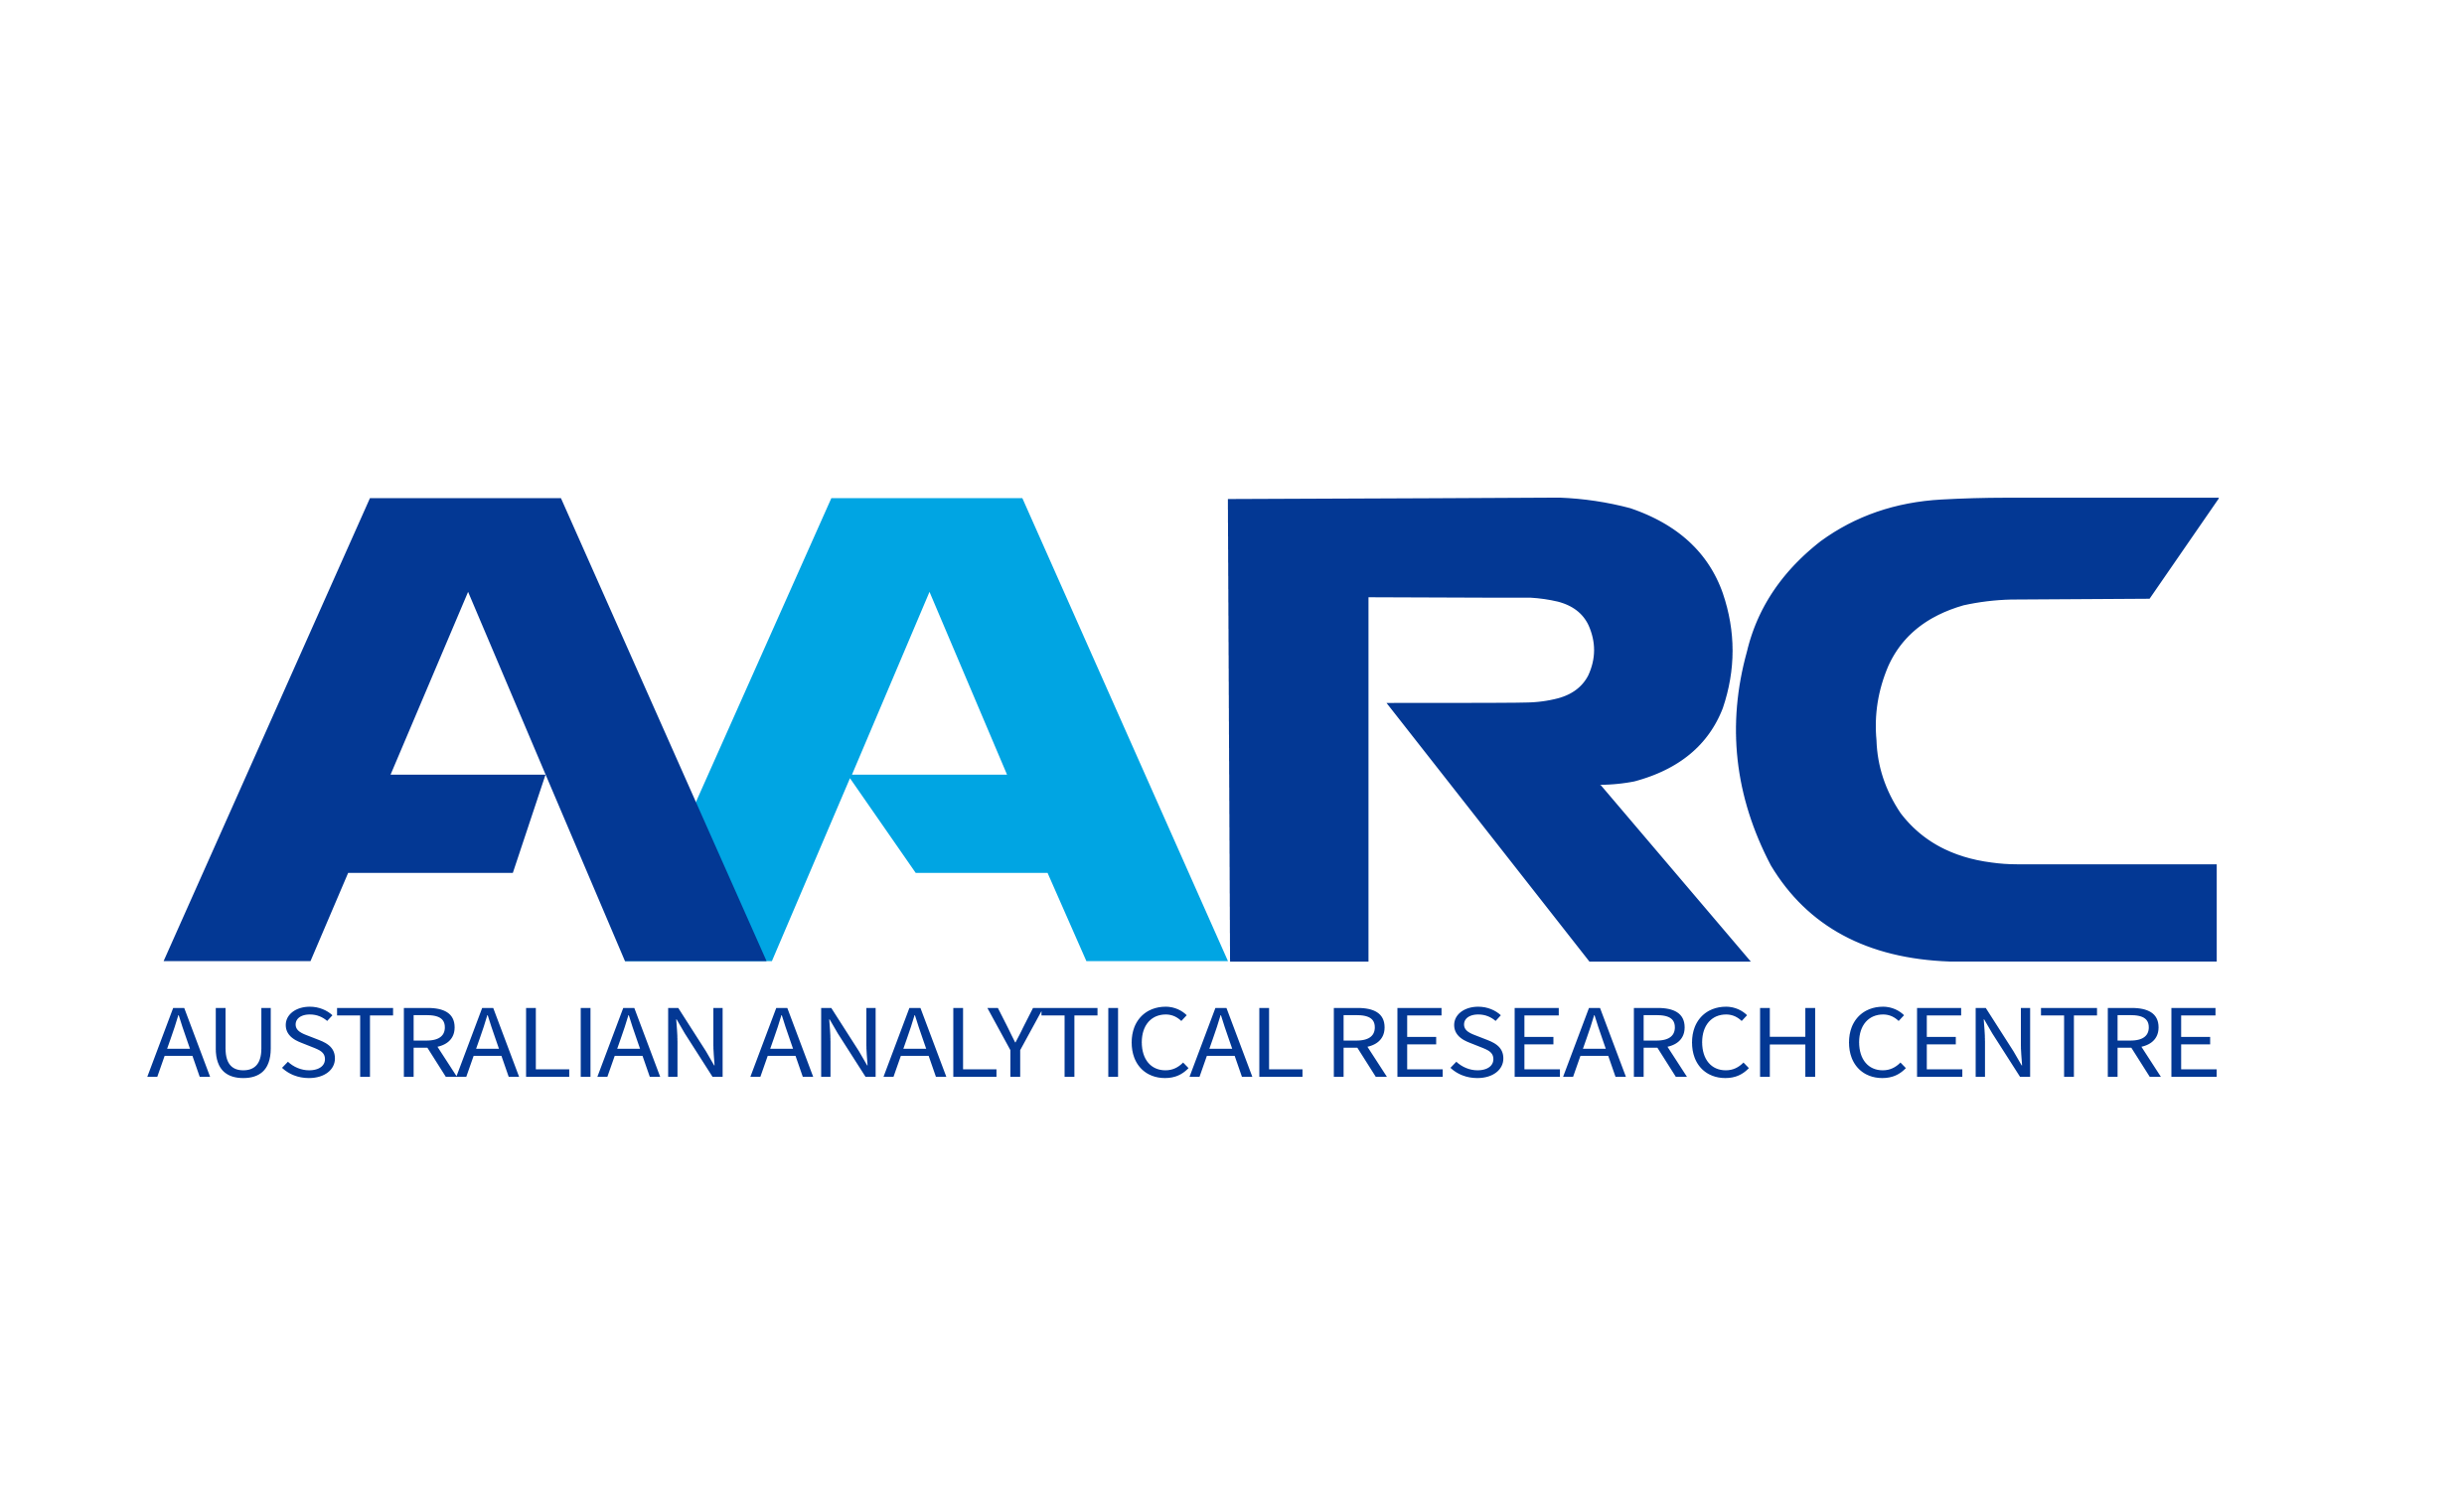 AARC 澳大利亚分析研究中心